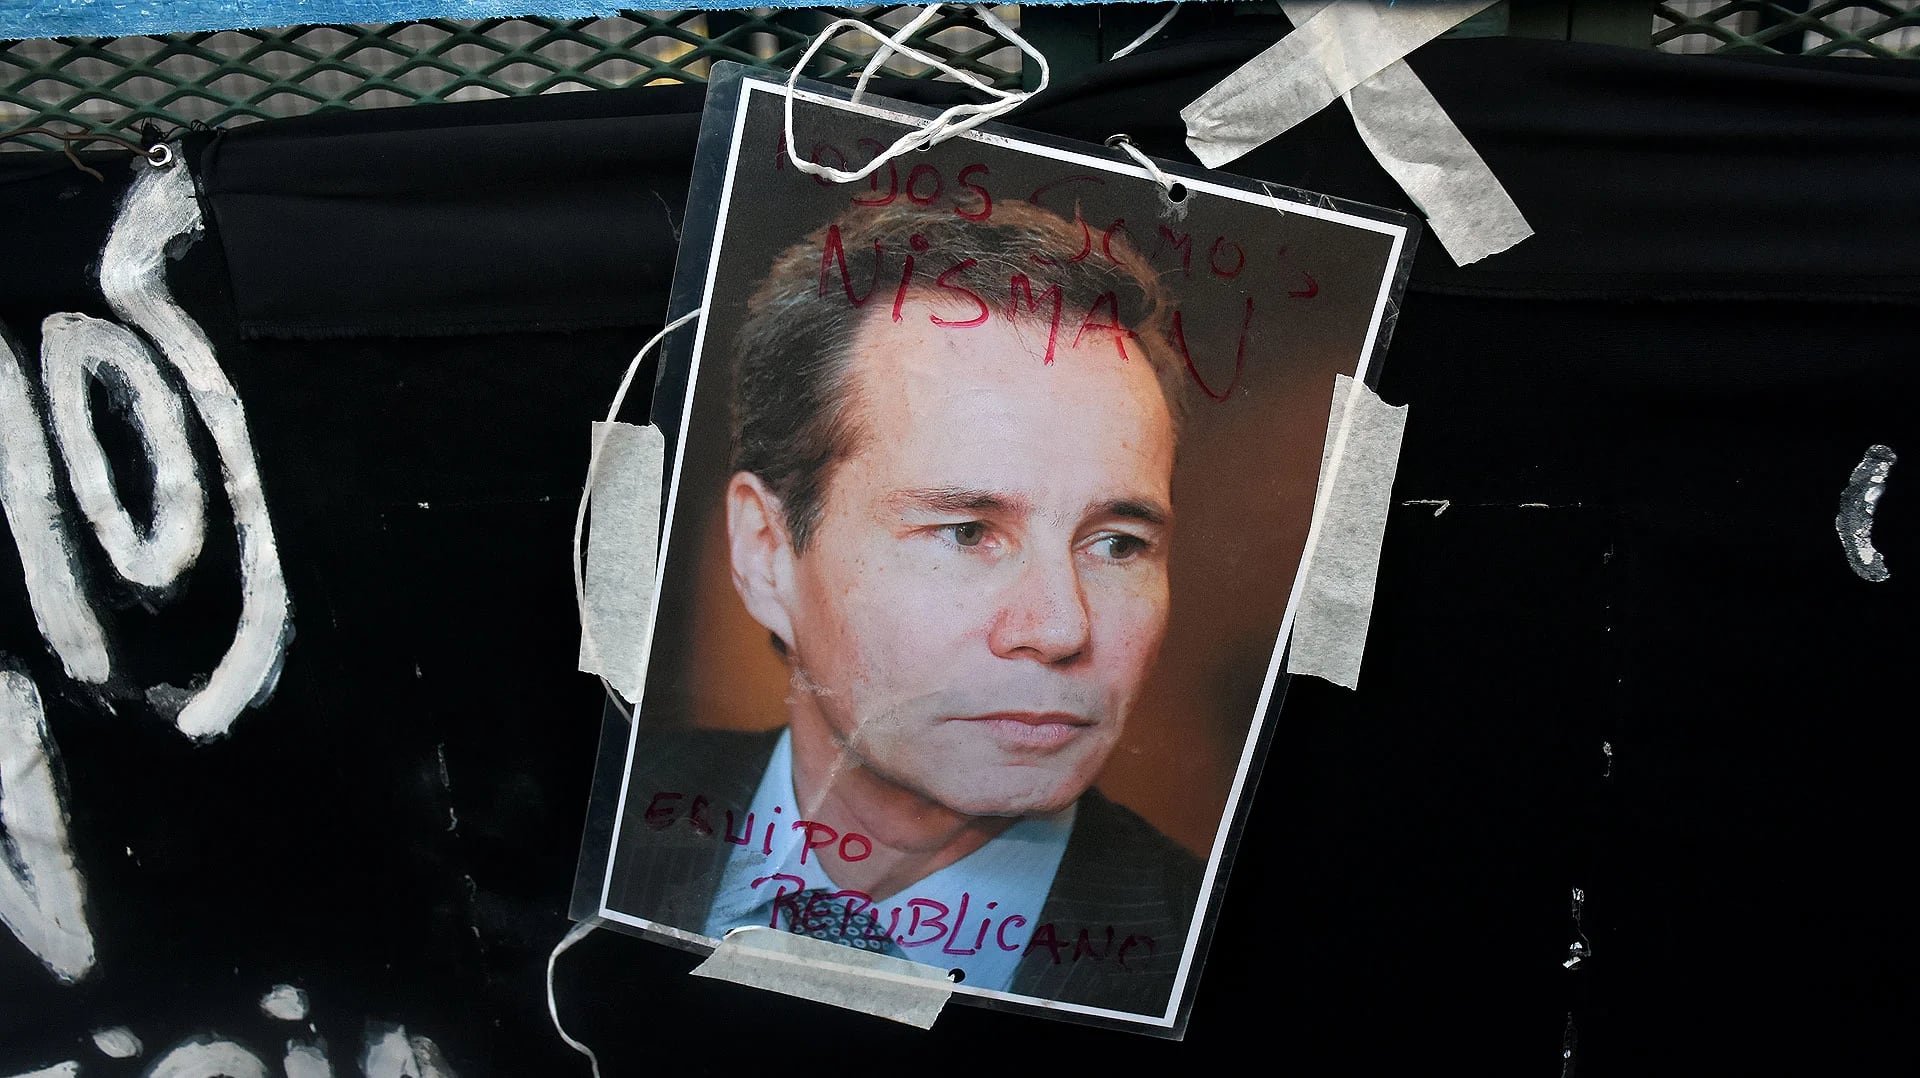 Durante la manifestación, hubo varios pedidos de justicia para que se esclarezca la muerte del fiscal Alberto Nisman